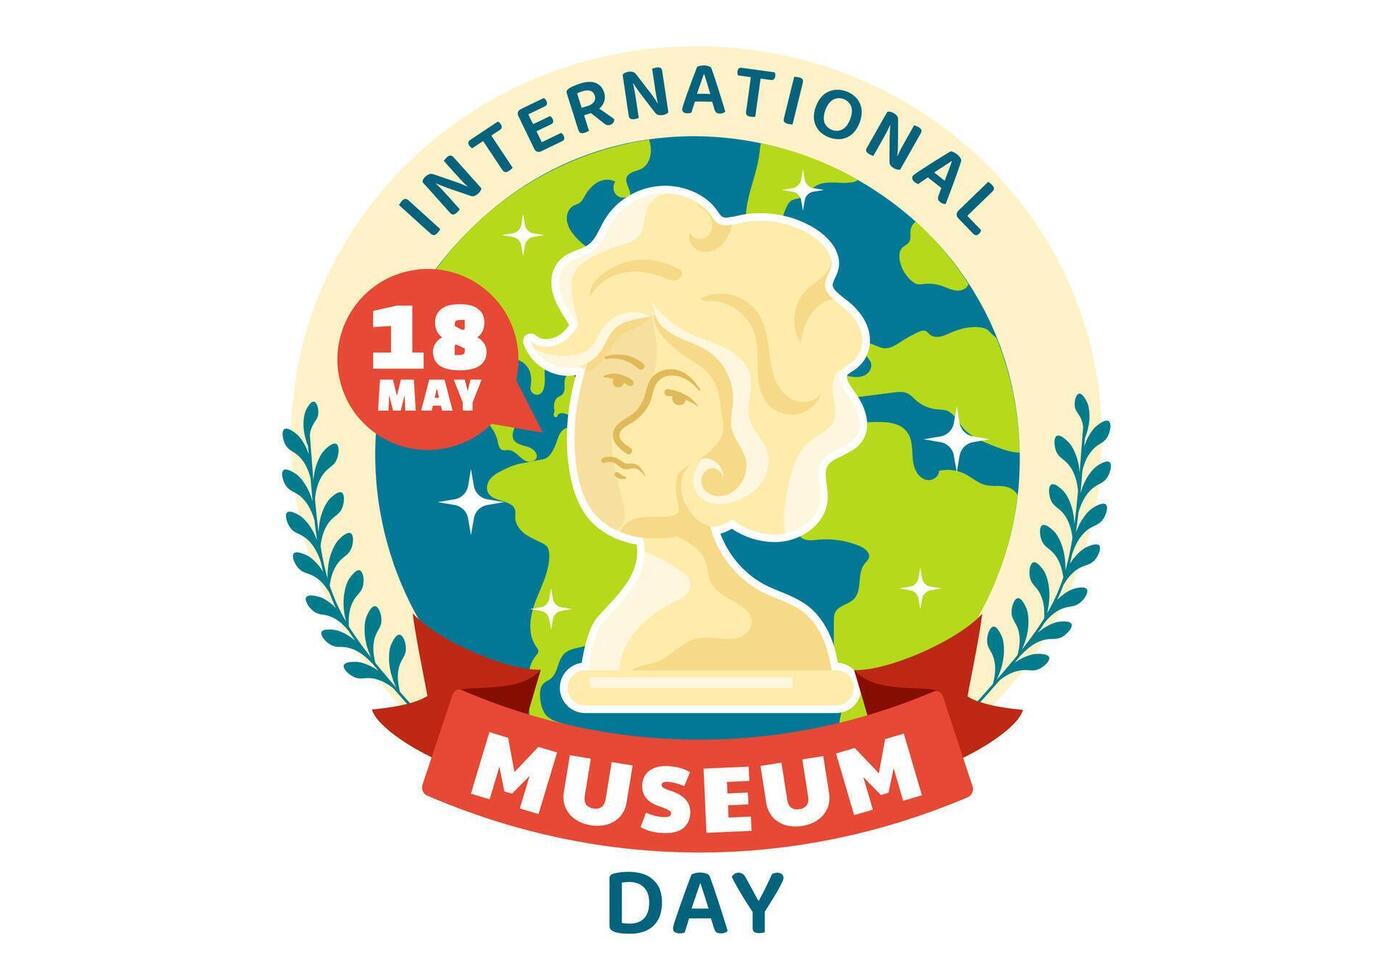 Internationale museum dag vector illustratie Aan mei 18 met gebouw galerij of kunstwerken in vlak tekenfilm achtergrond ontwerp